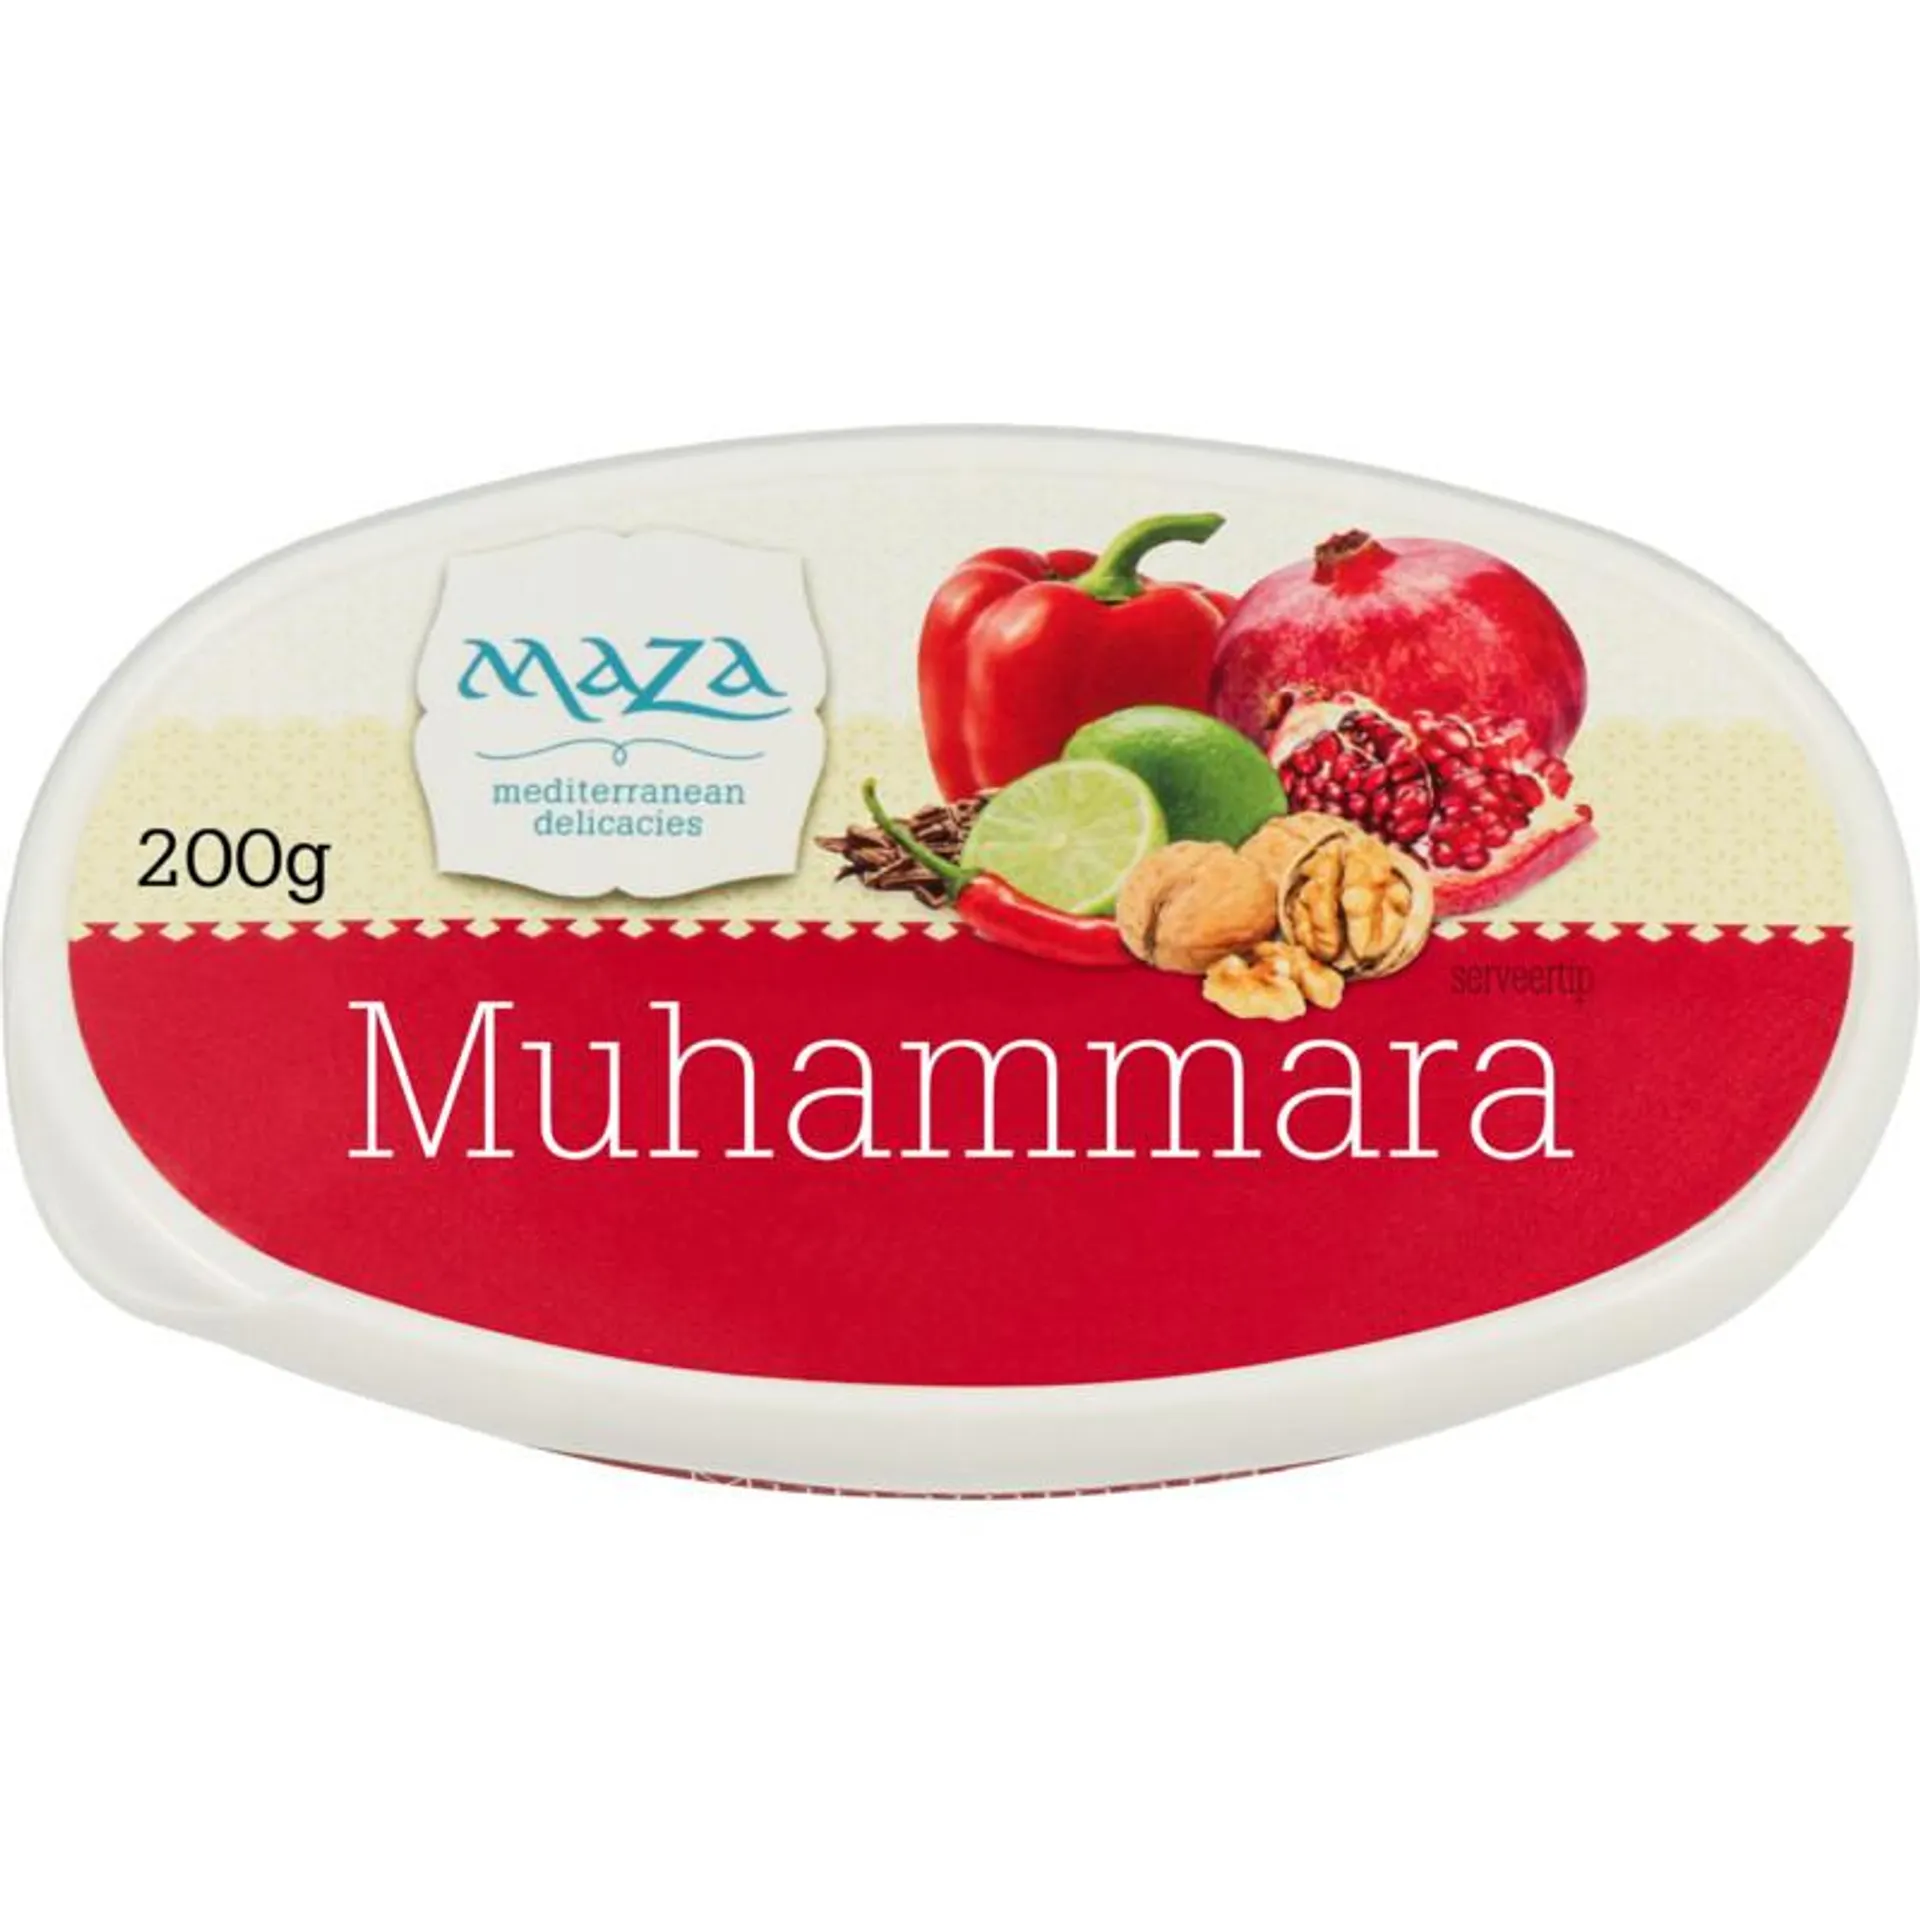 Maza muhammara